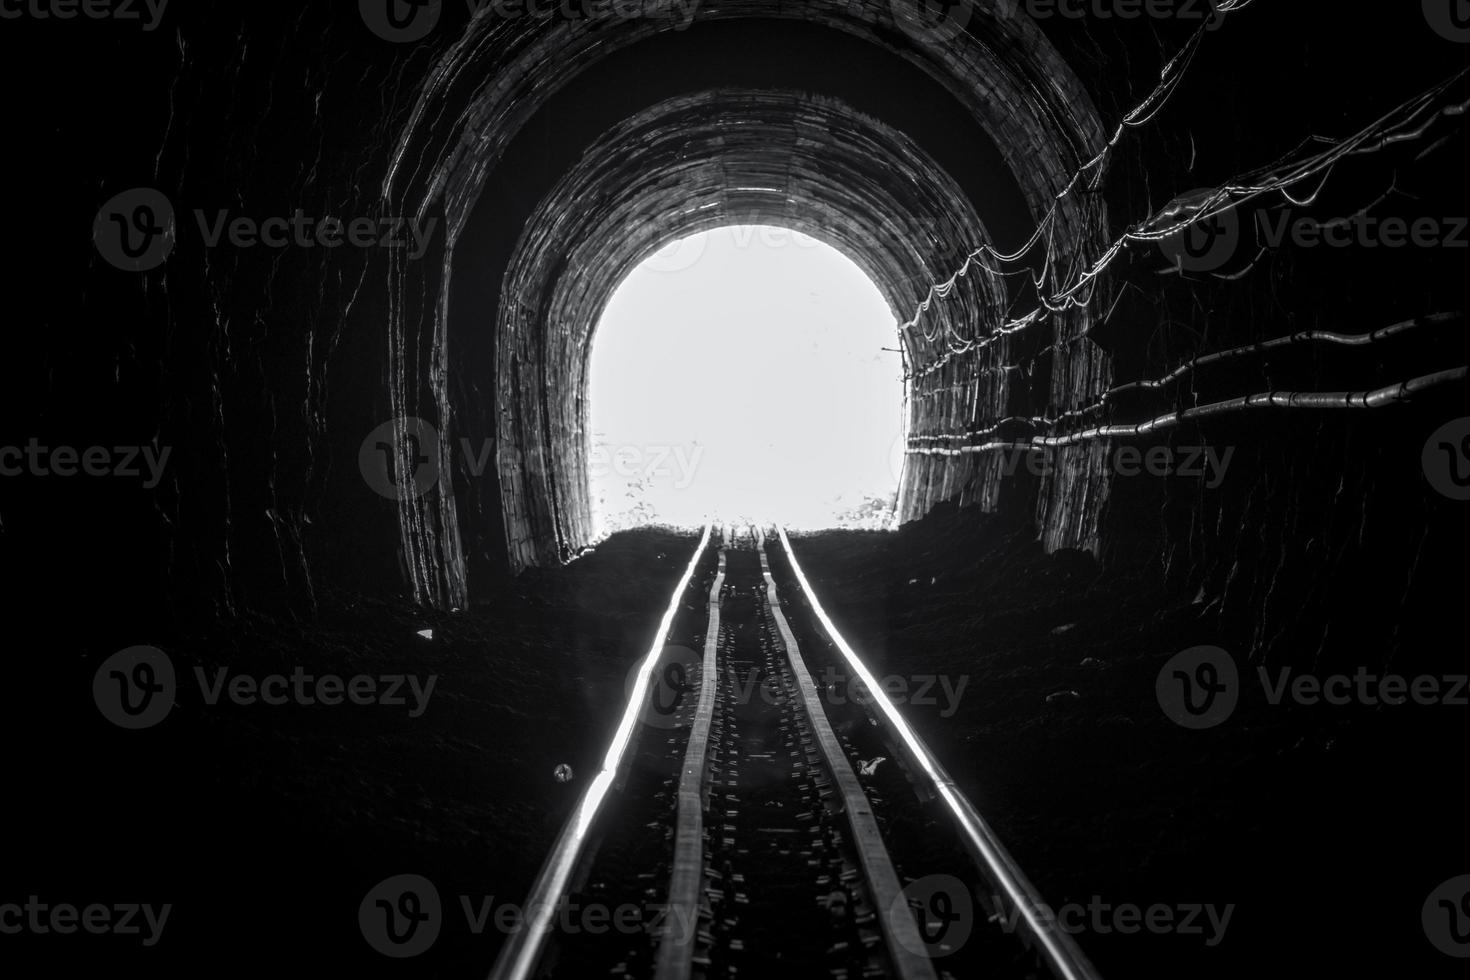 tågtunnel. gammal järnväg i grotta. hopp om liv i slutet av vägen. järnväg av lokomotiv tåg i thailand. gammal arkitektur. järnvägstunnel byggd 1914. resa och hopp vid resmålet. foto